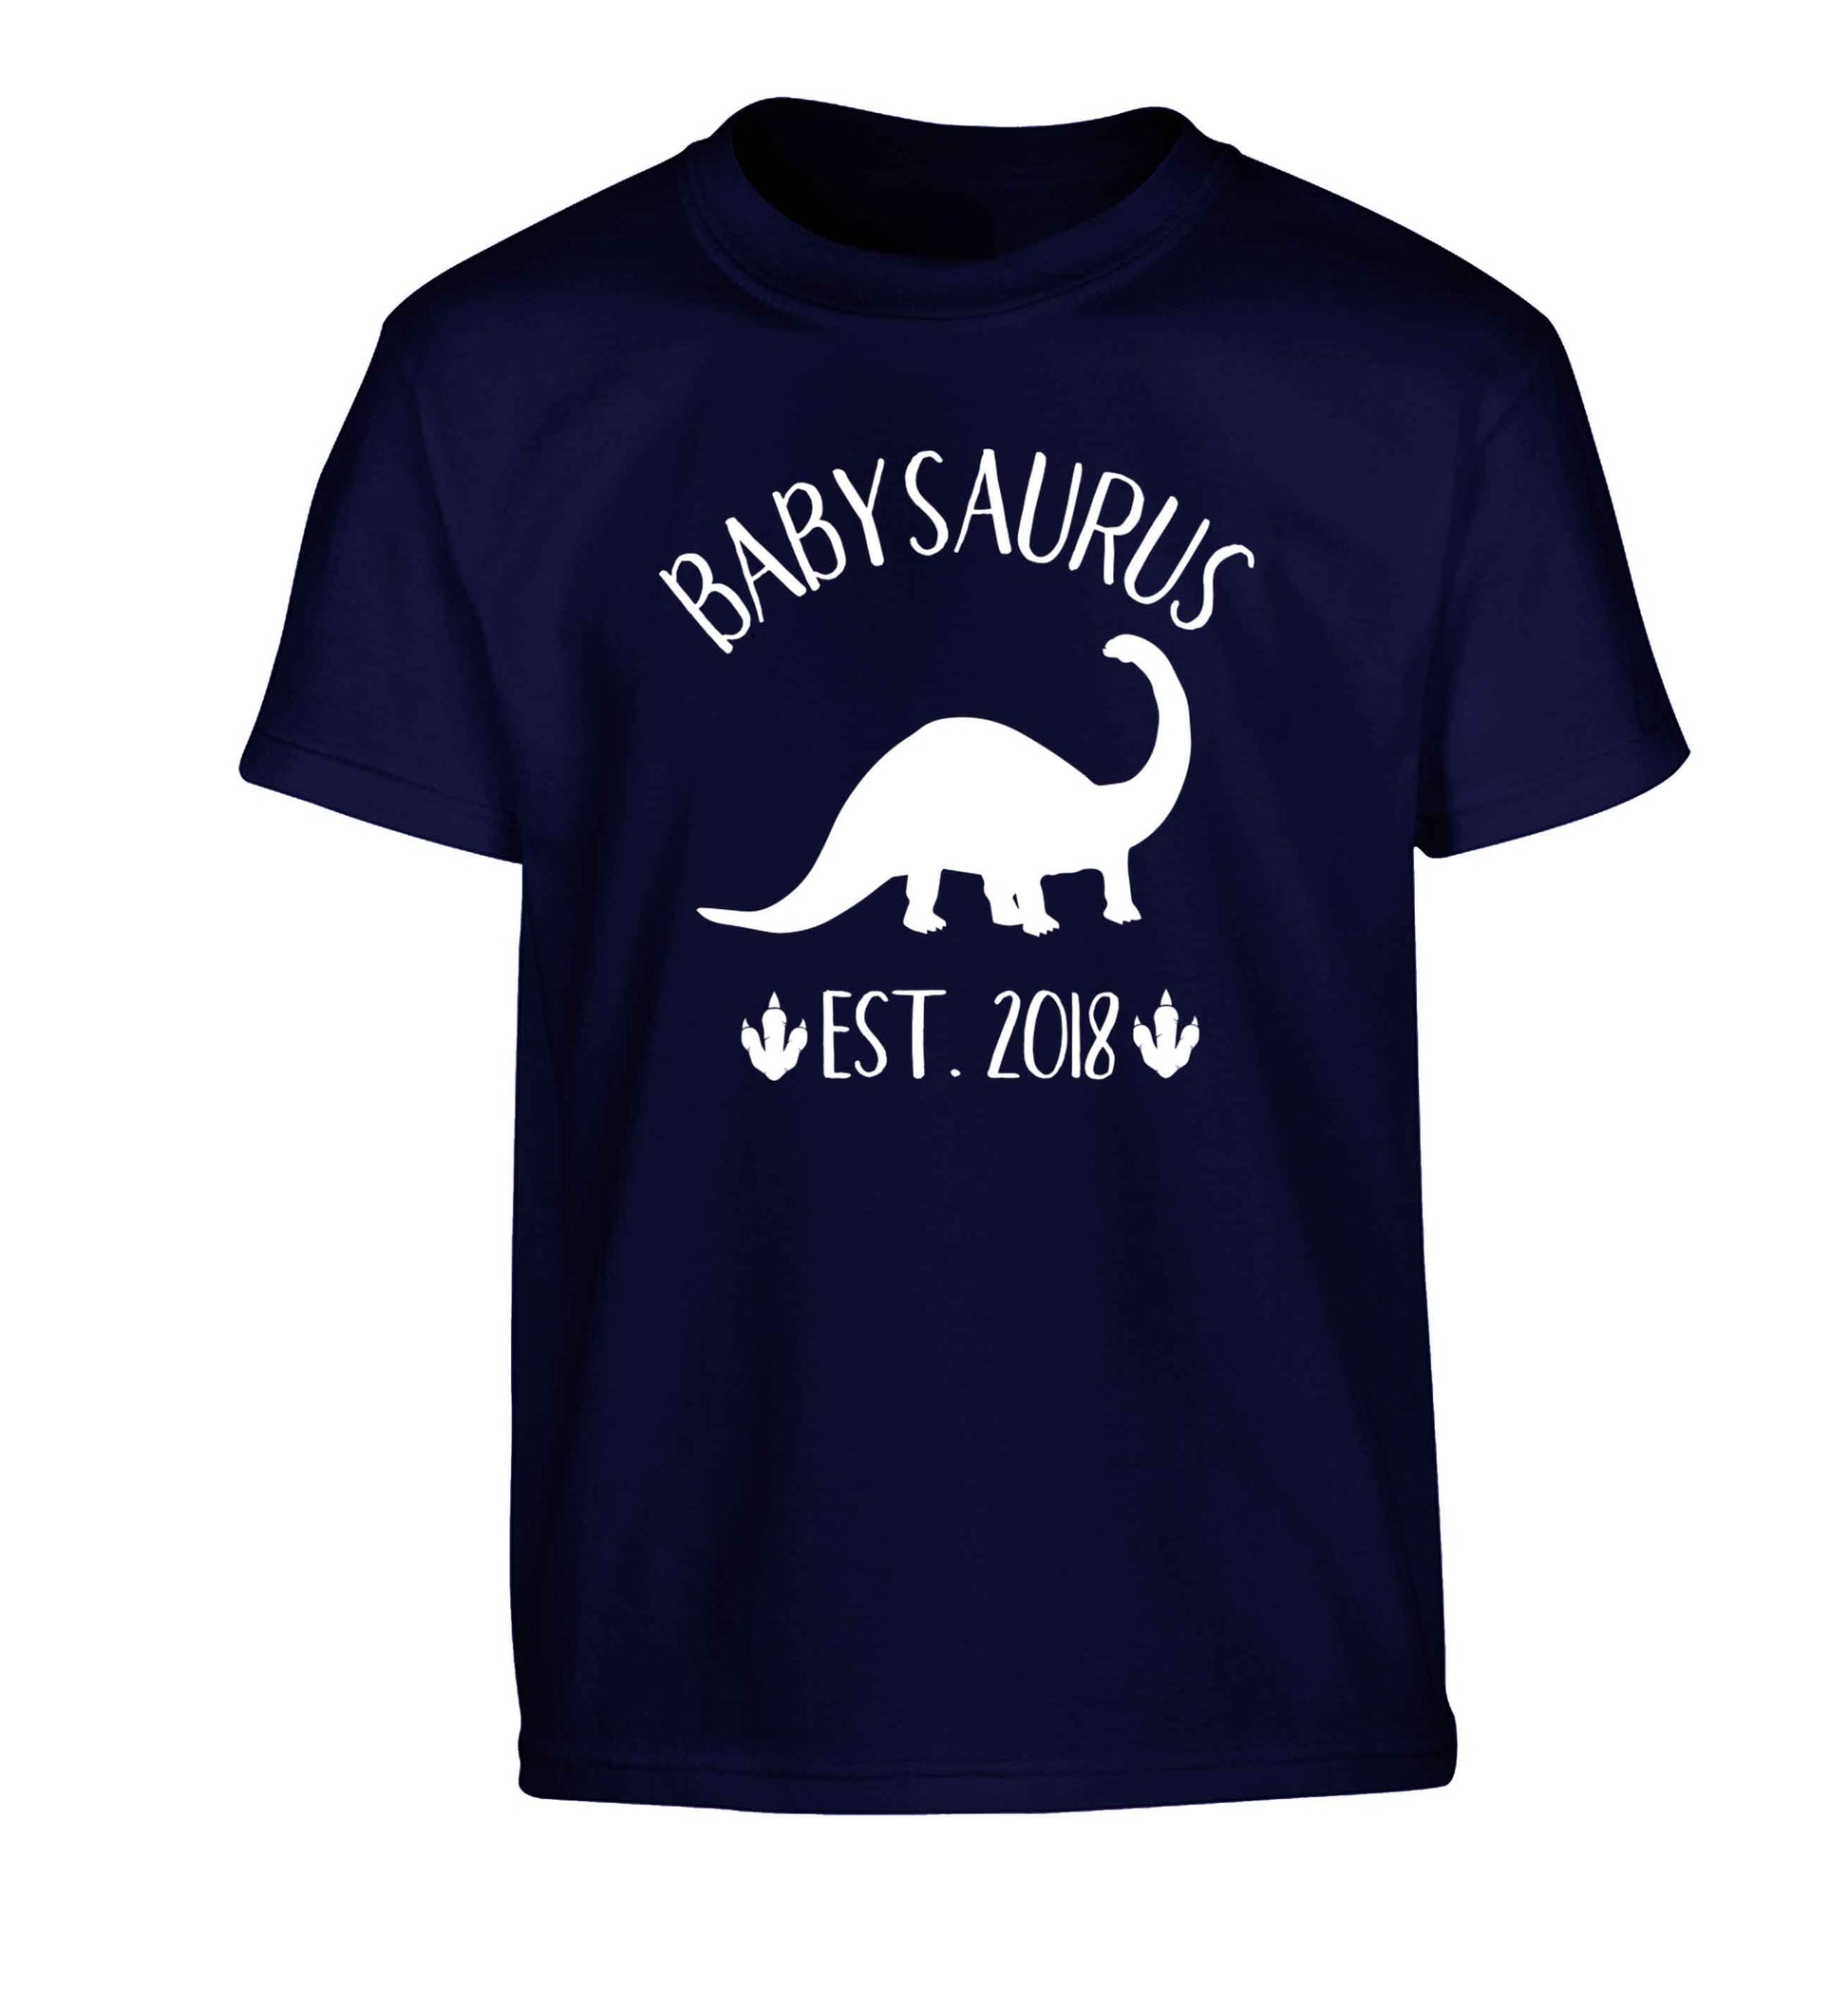 Personalised babysaurus since (custom date) Children's navy Tshirt 12-13 Years